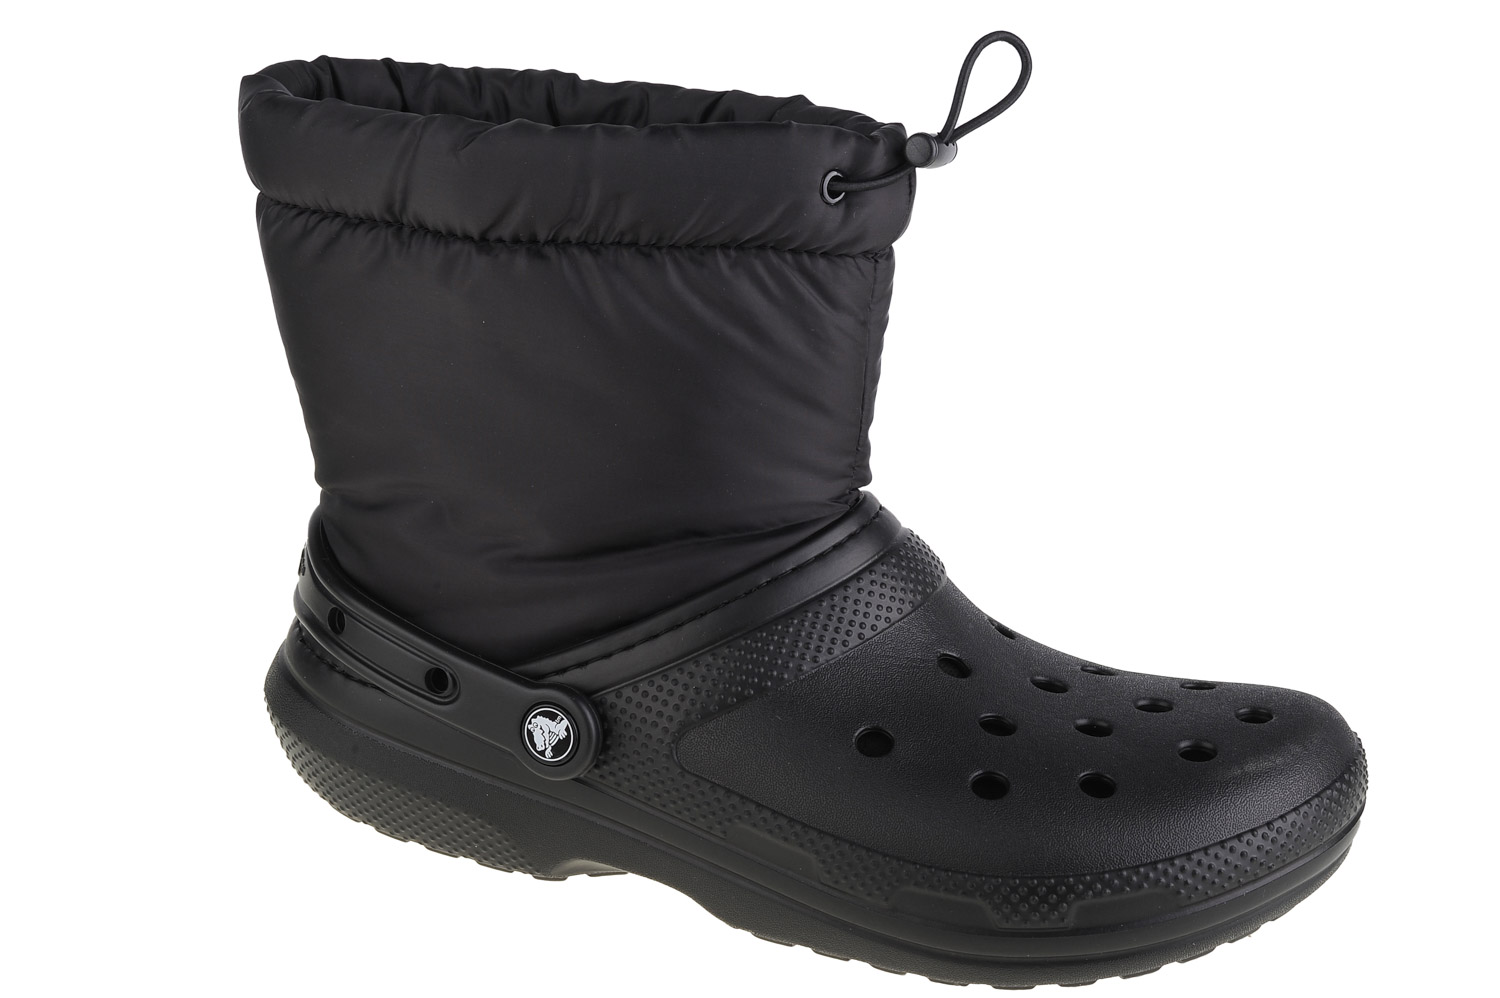 Ботинки Crocs Crocs Classic Lined Neo Puff Boot, черный ботинки classic lined neo puff boot crocs синий